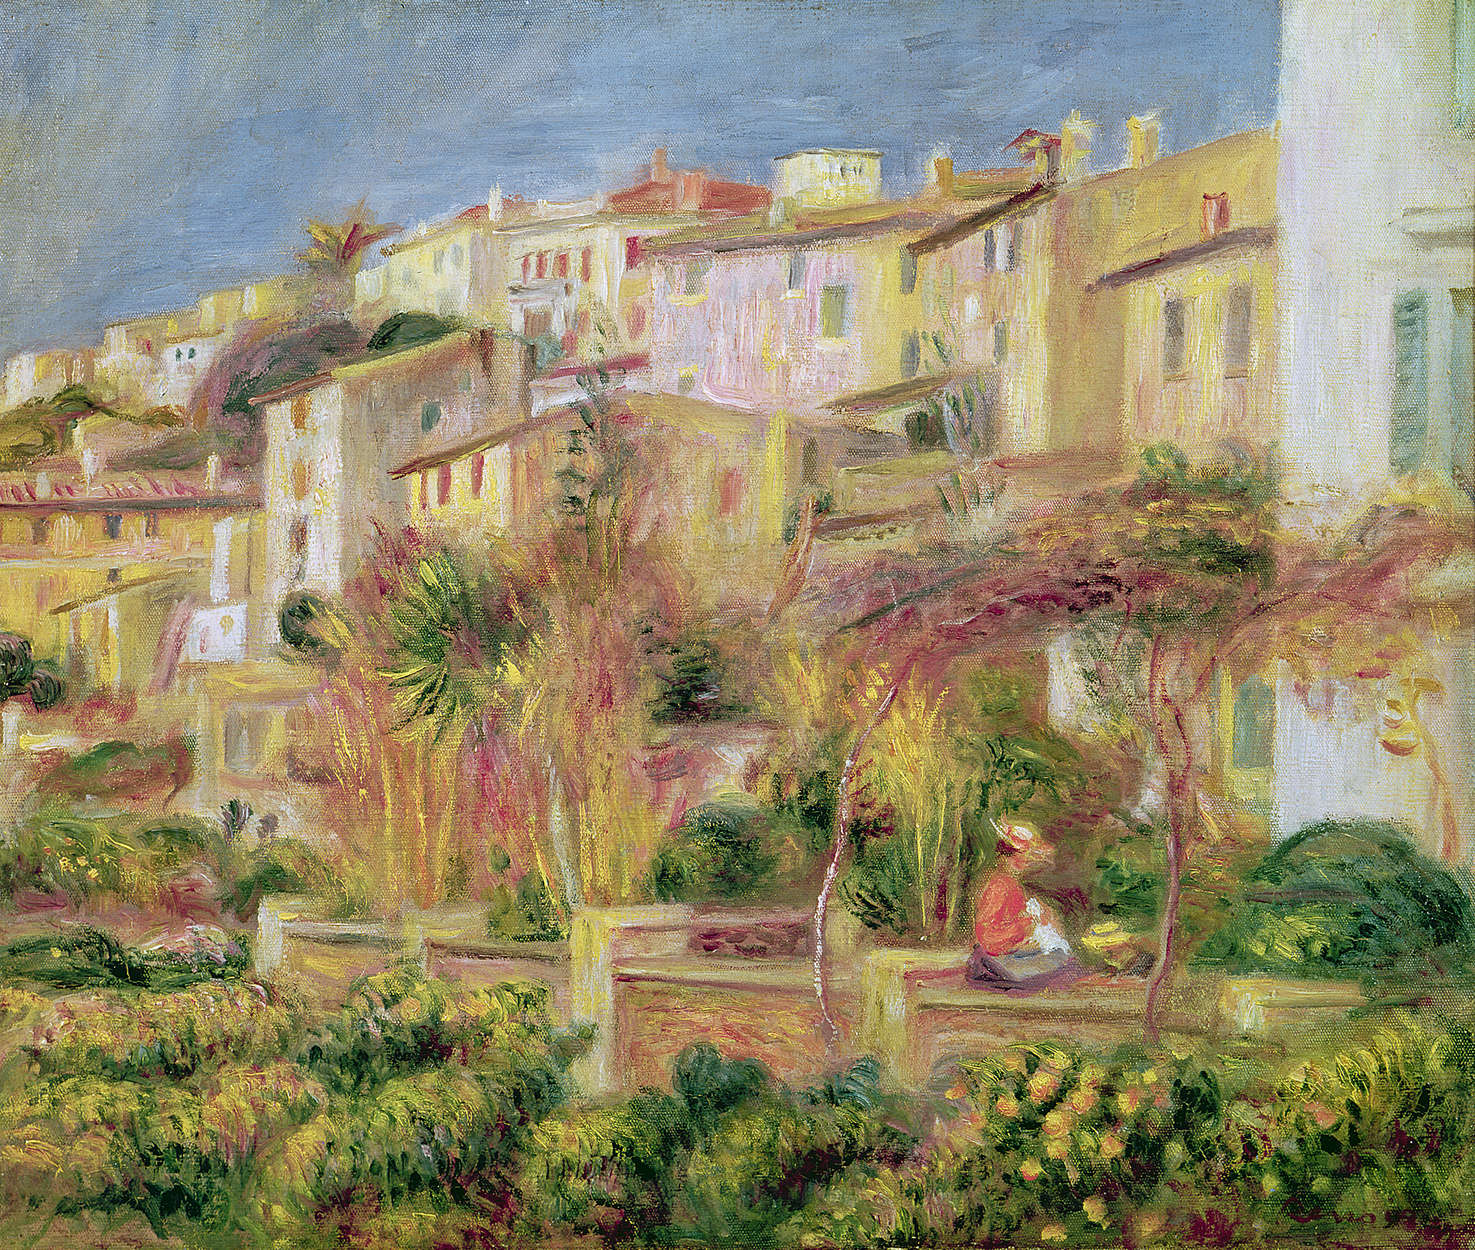             Papier peint panoramique "Terrasse à Cagnes" de Pierre Auguste Renoir
        